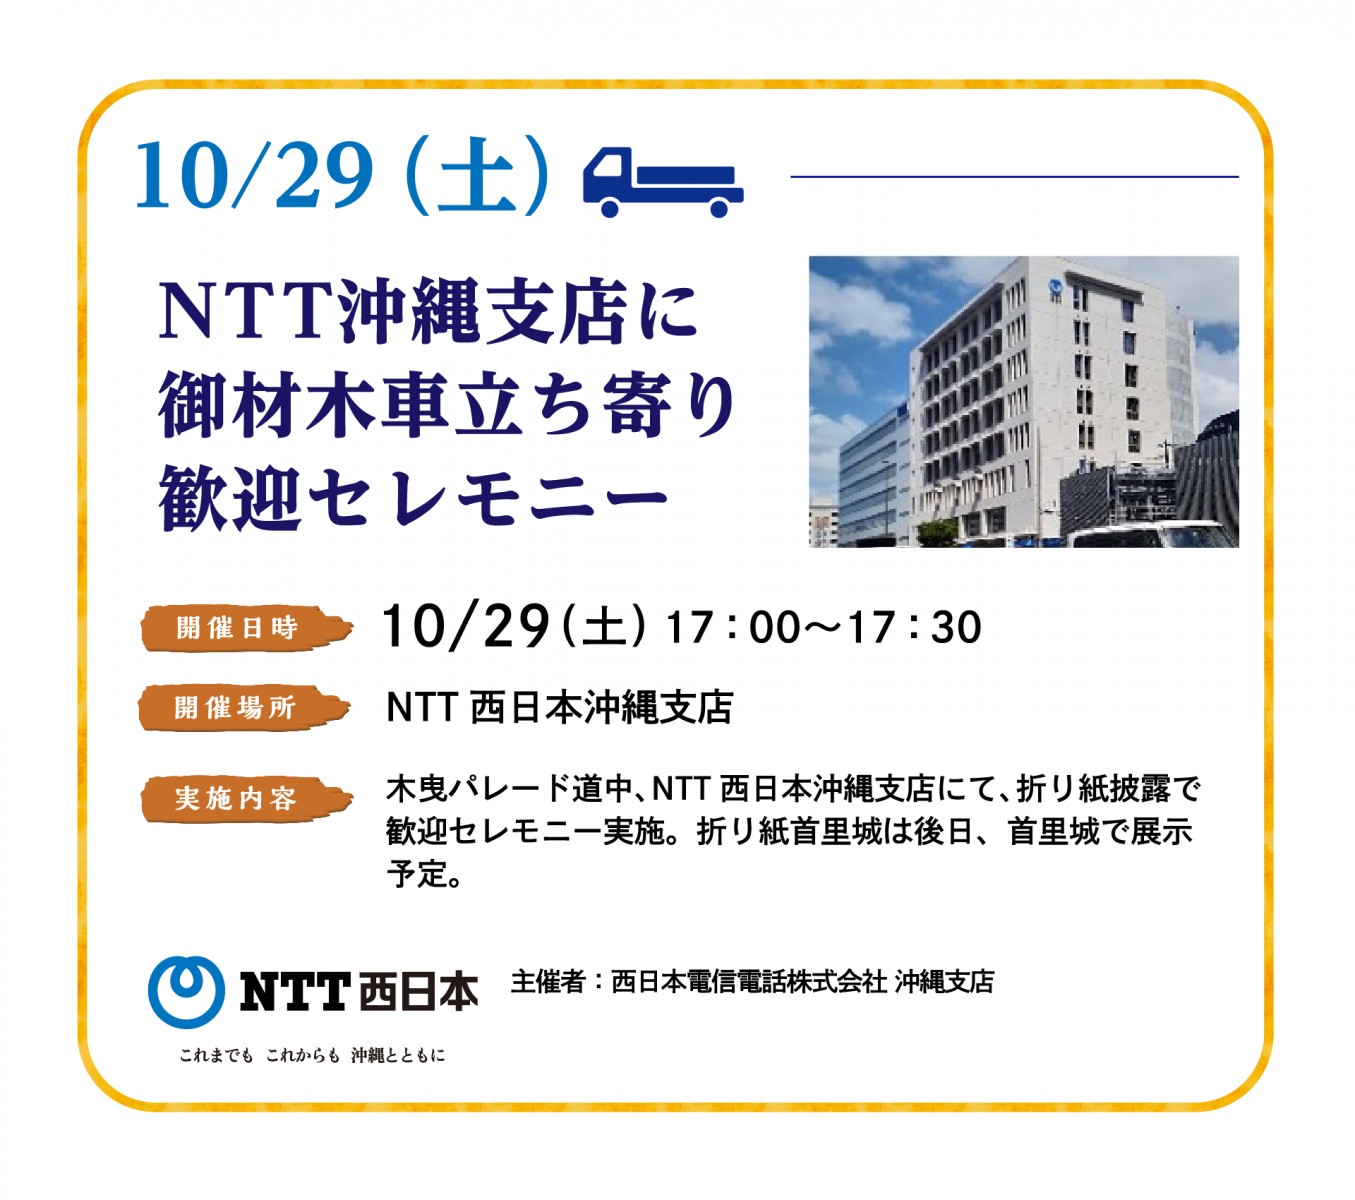 10/29(土)NTT沖縄支店に立ち寄り歓迎セレモニー